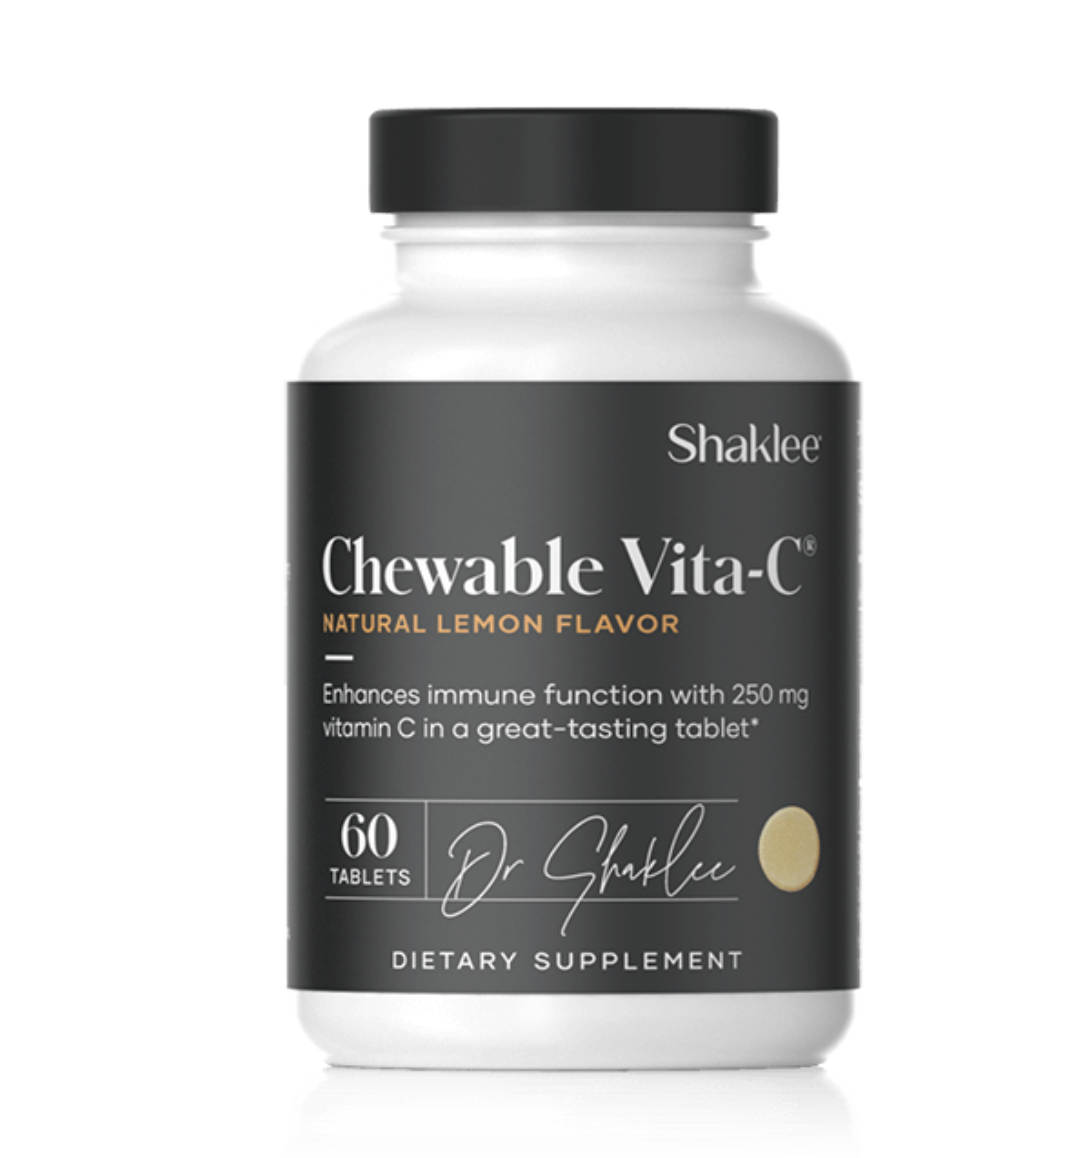 Chewable Vita-C